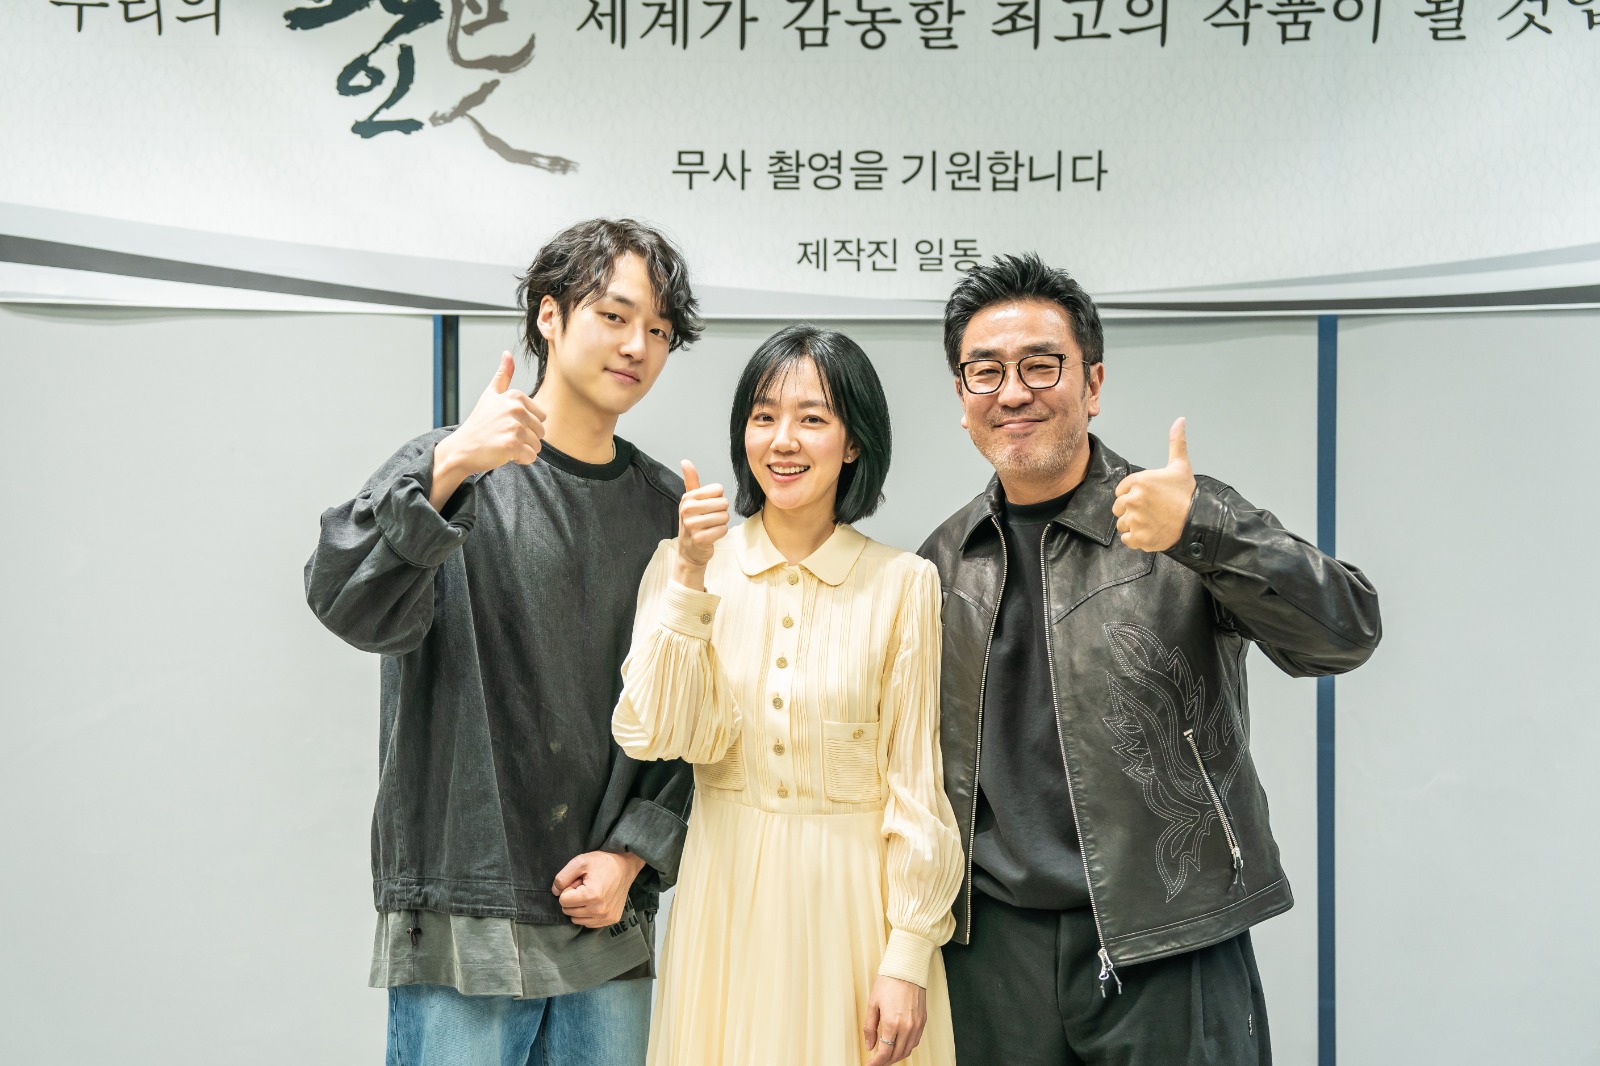 Rahasia Gelap dan Harta Karun Menunggu dalam Serial Drama Korea Terbaru ‘Low Life’, Catat Tanggal Tayangnya